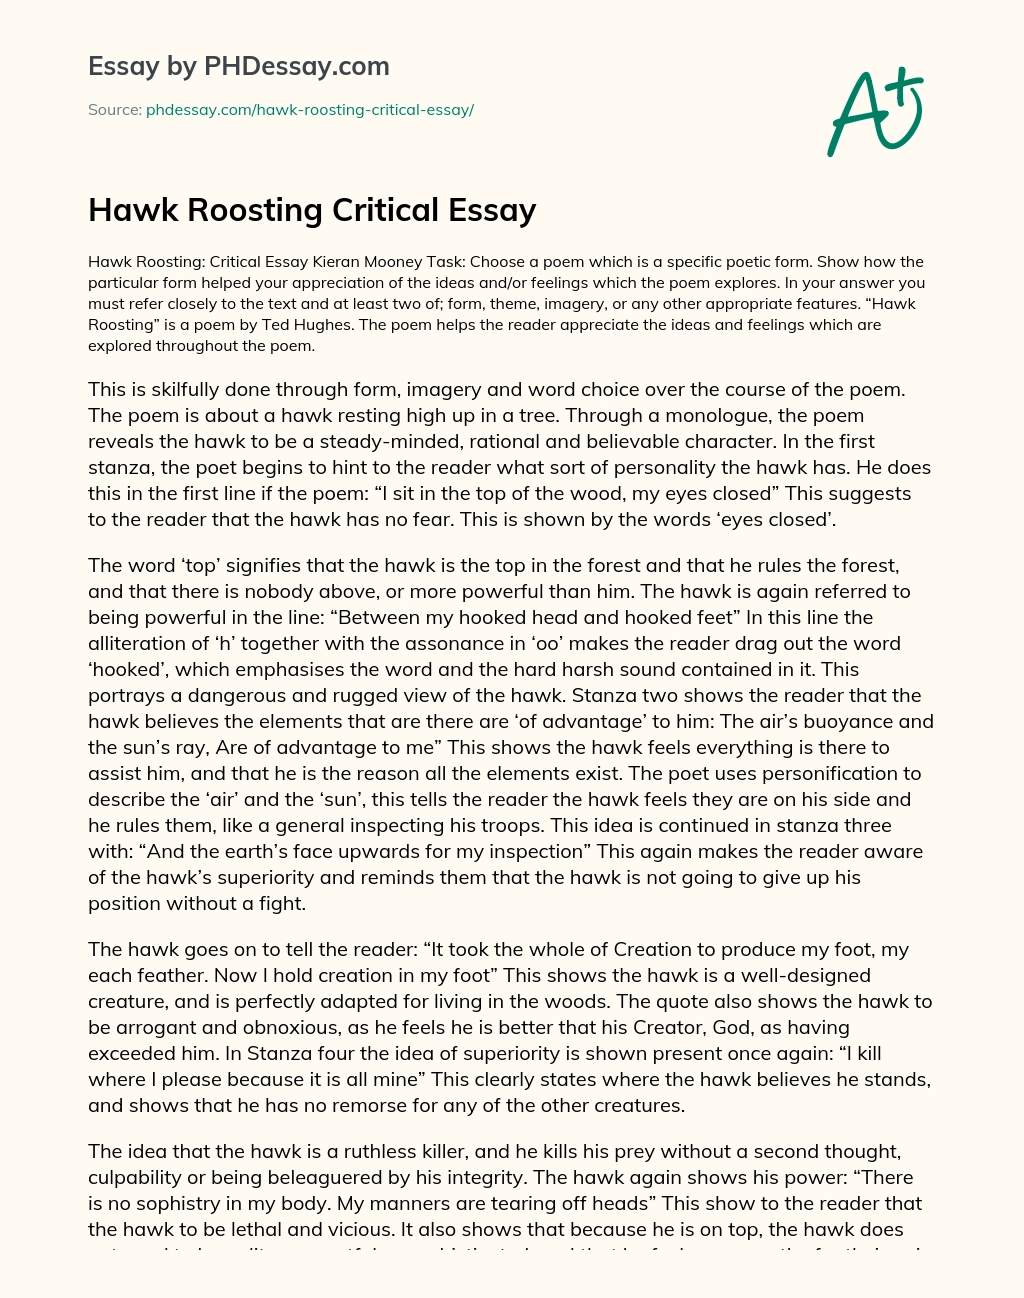 Hawk Roosting Critical Essay essay